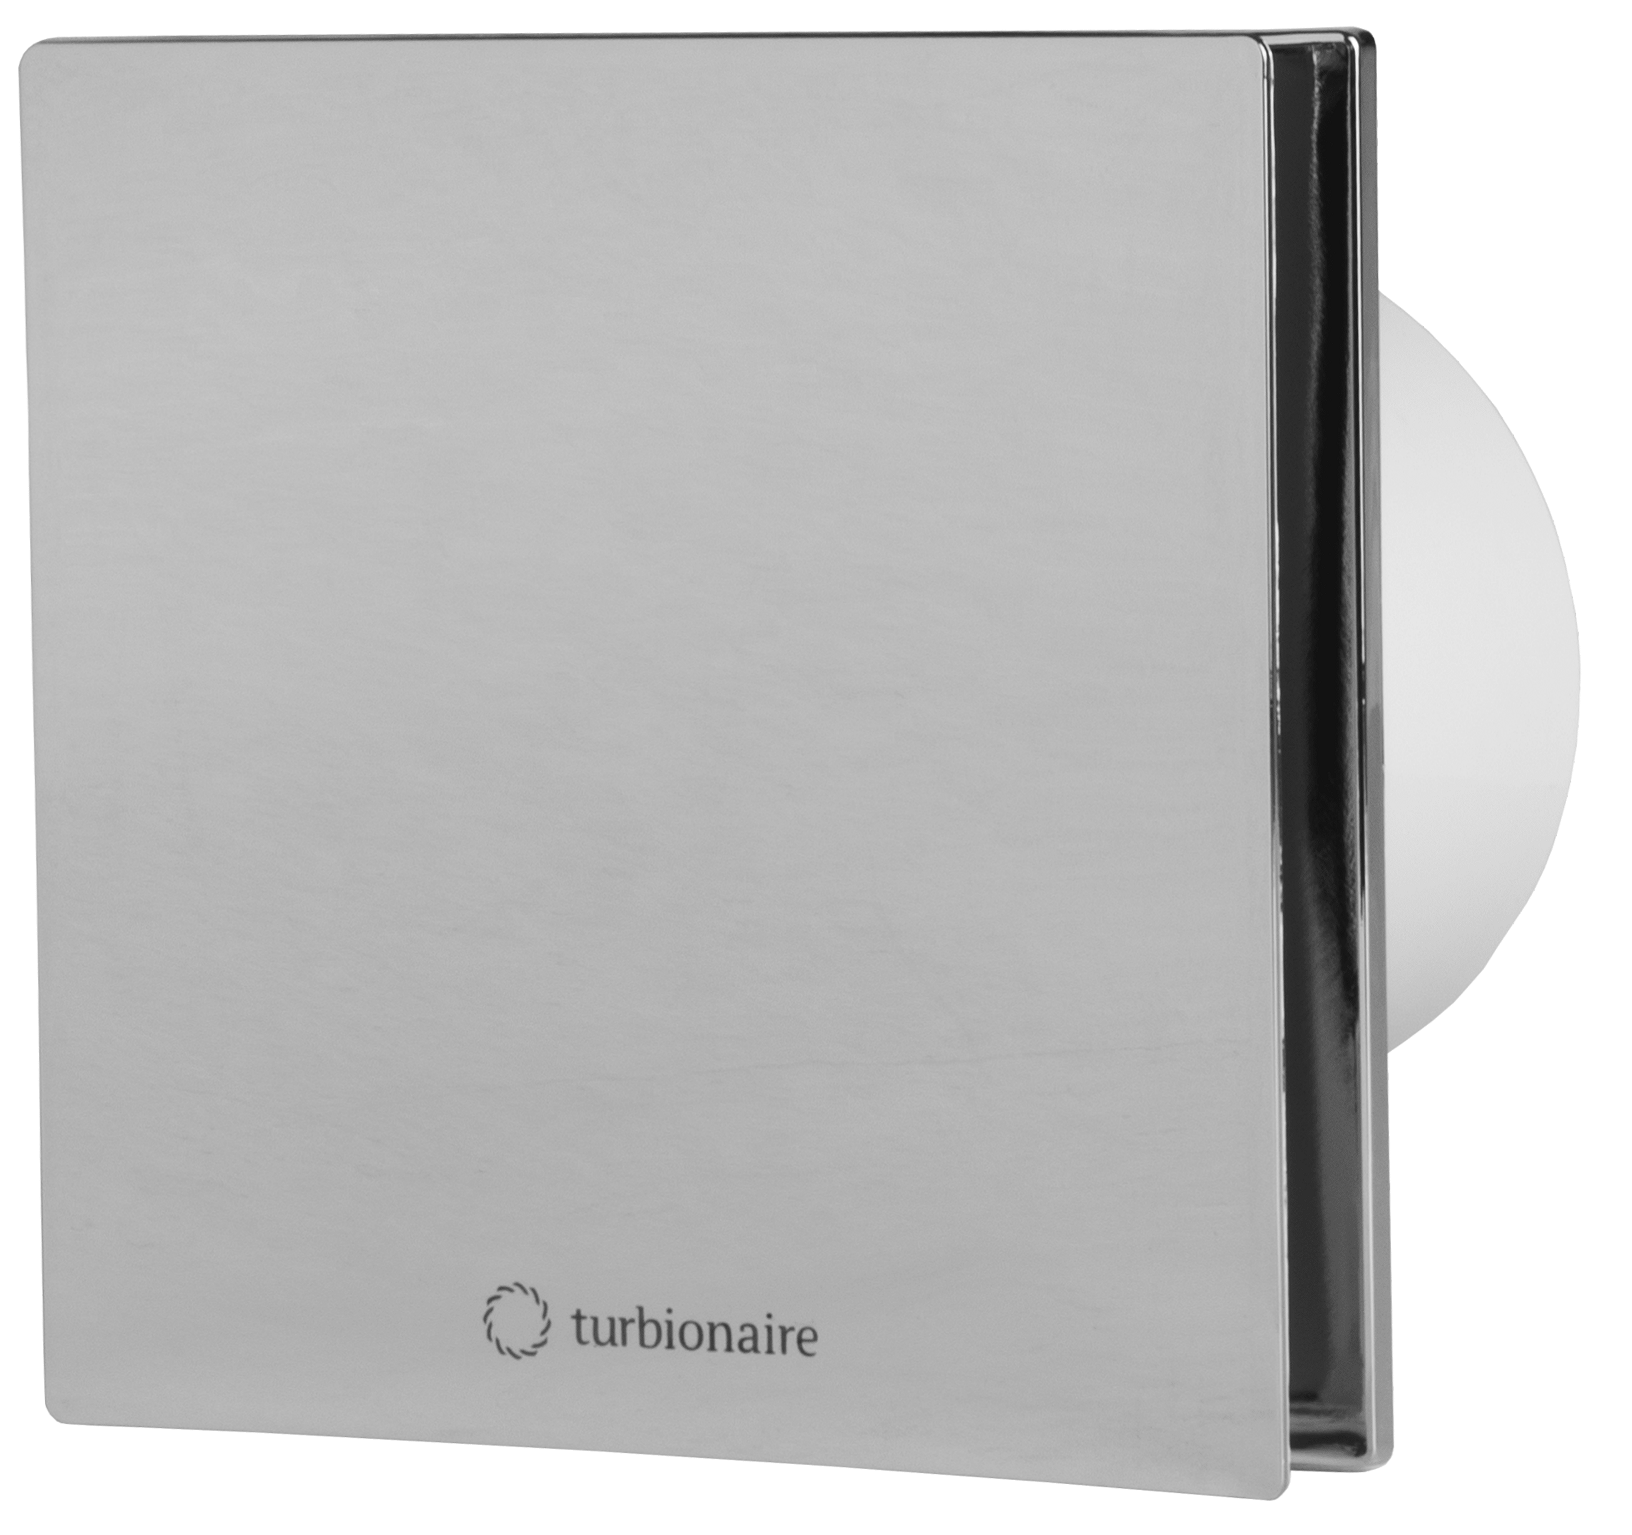 Вытяжной вентилятор Turbionaire Arte 100 SC в интернет-магазине, главное фото